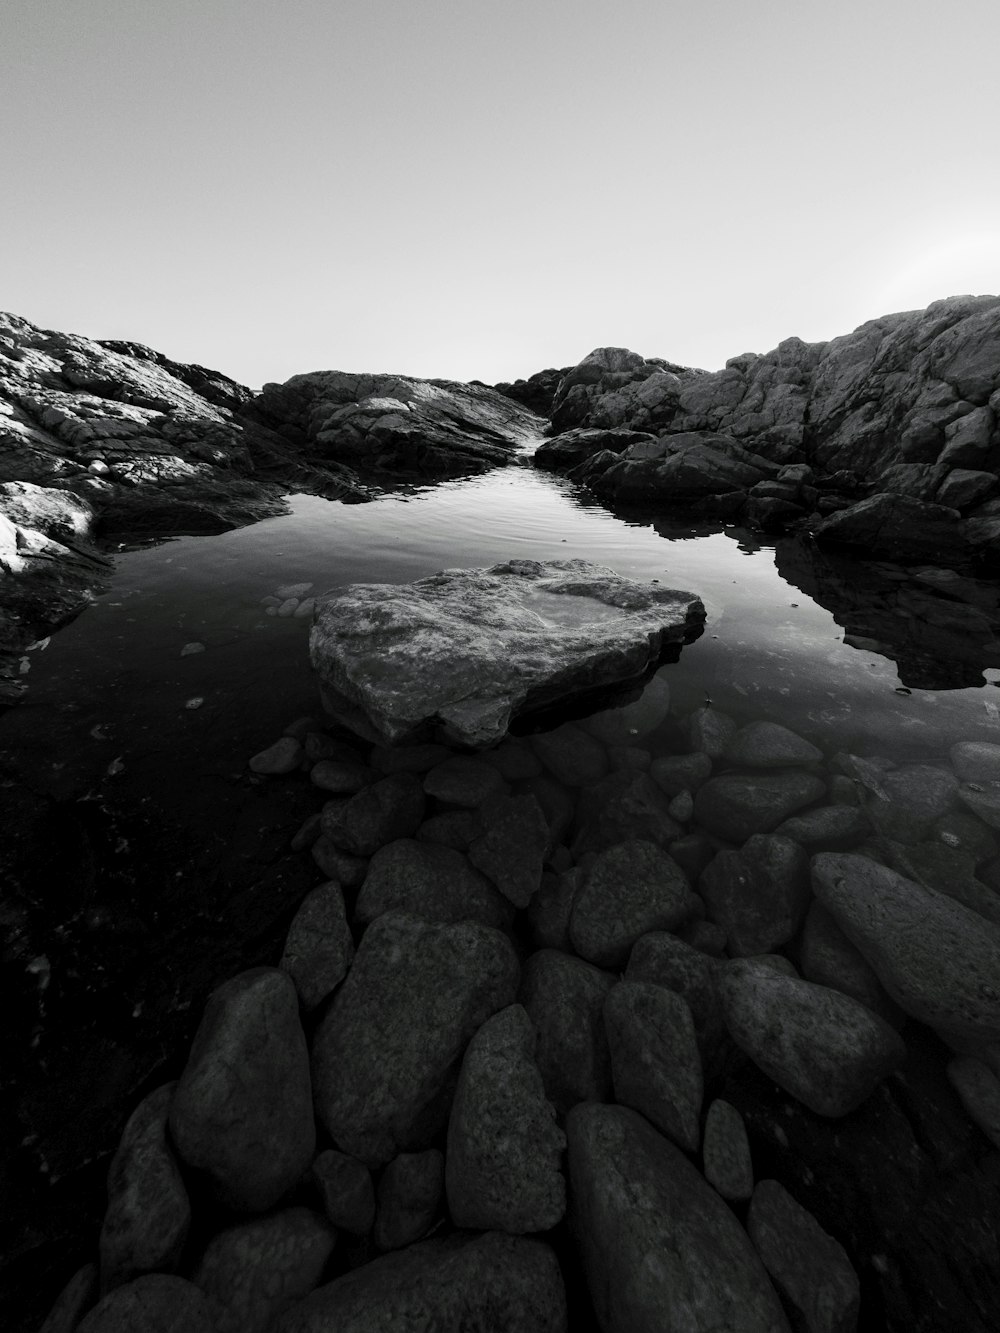 Una foto en blanco y negro de rocas y agua